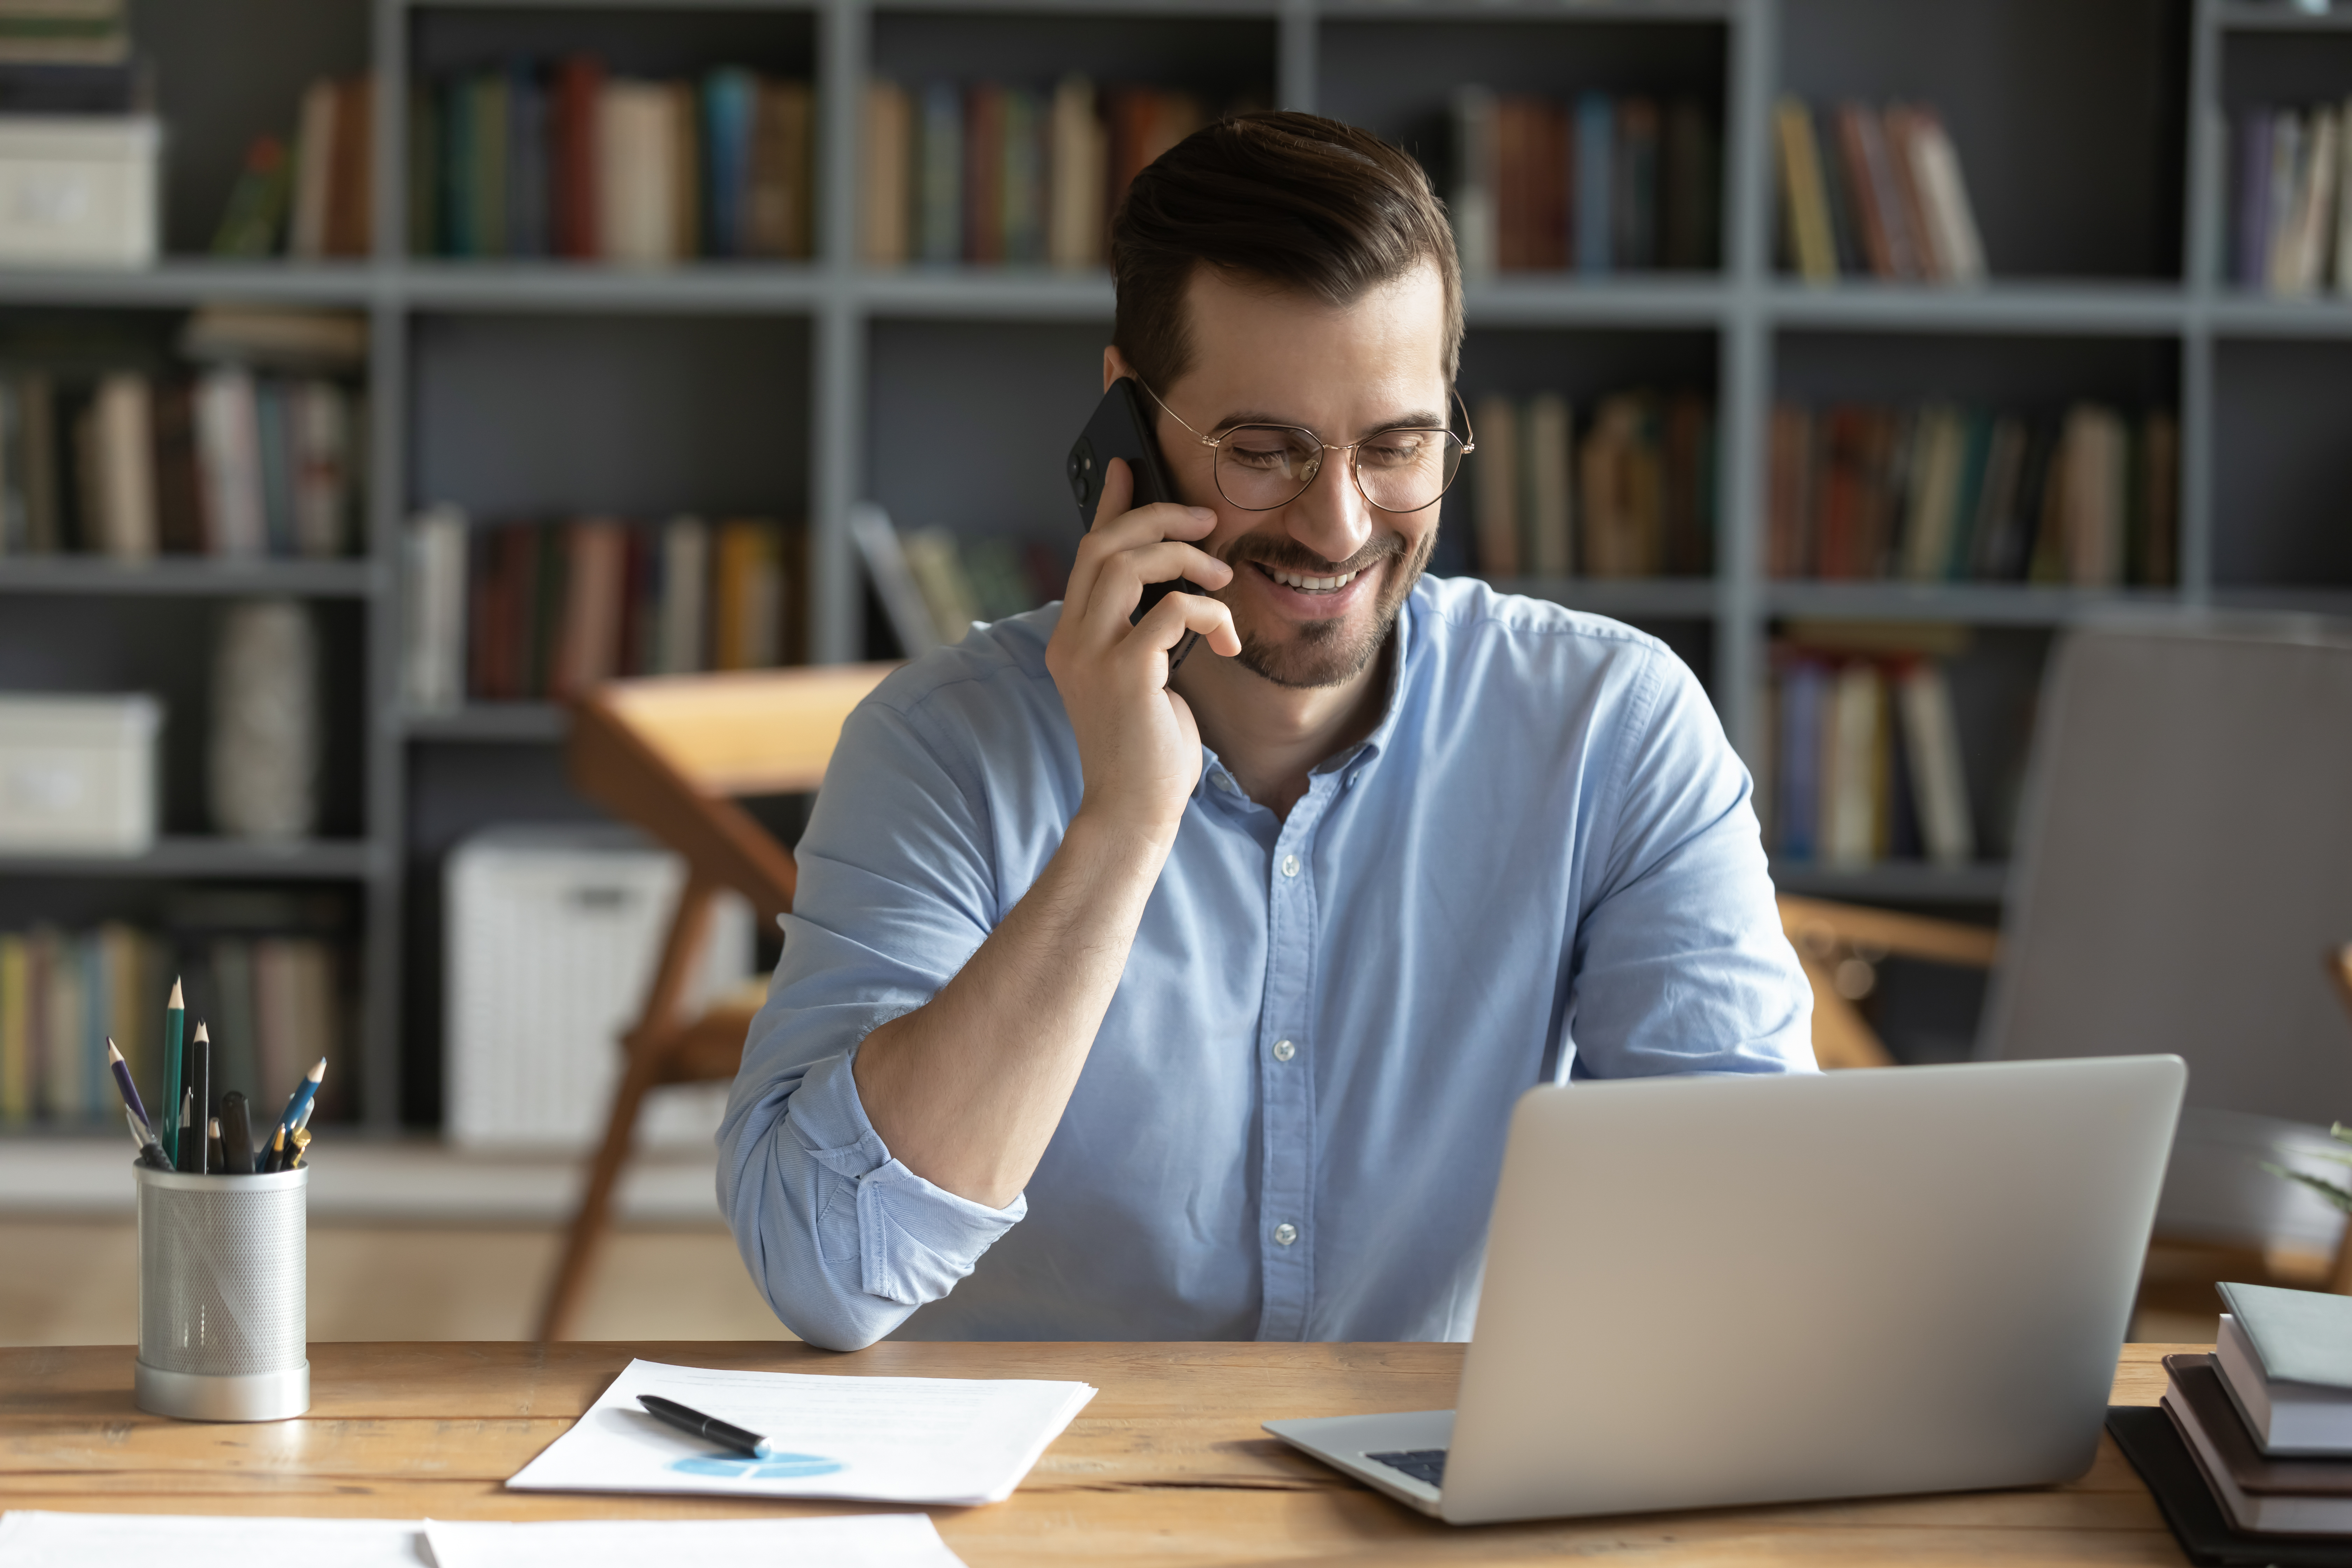 Ein Mann lächelt während eines Telefonats | Quelle: Shutterstock